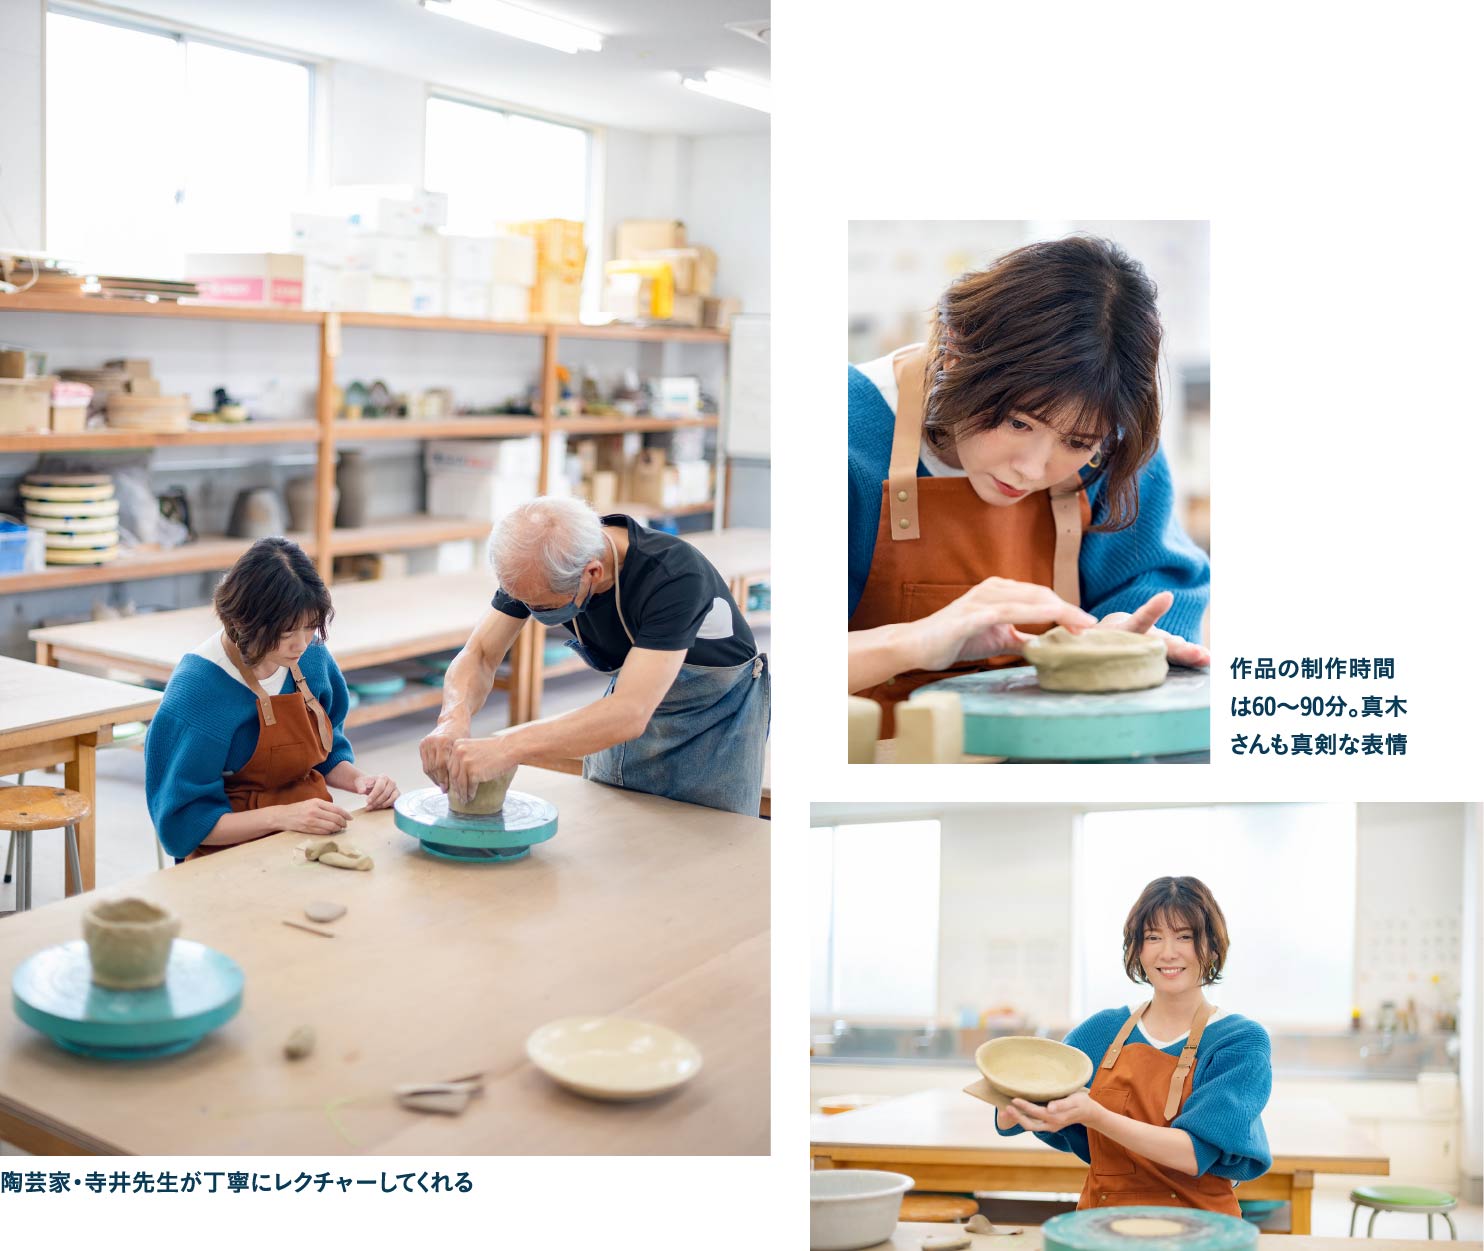 かつて紀州藩の御用窯があった男山焼体験館で陶芸に挑戦